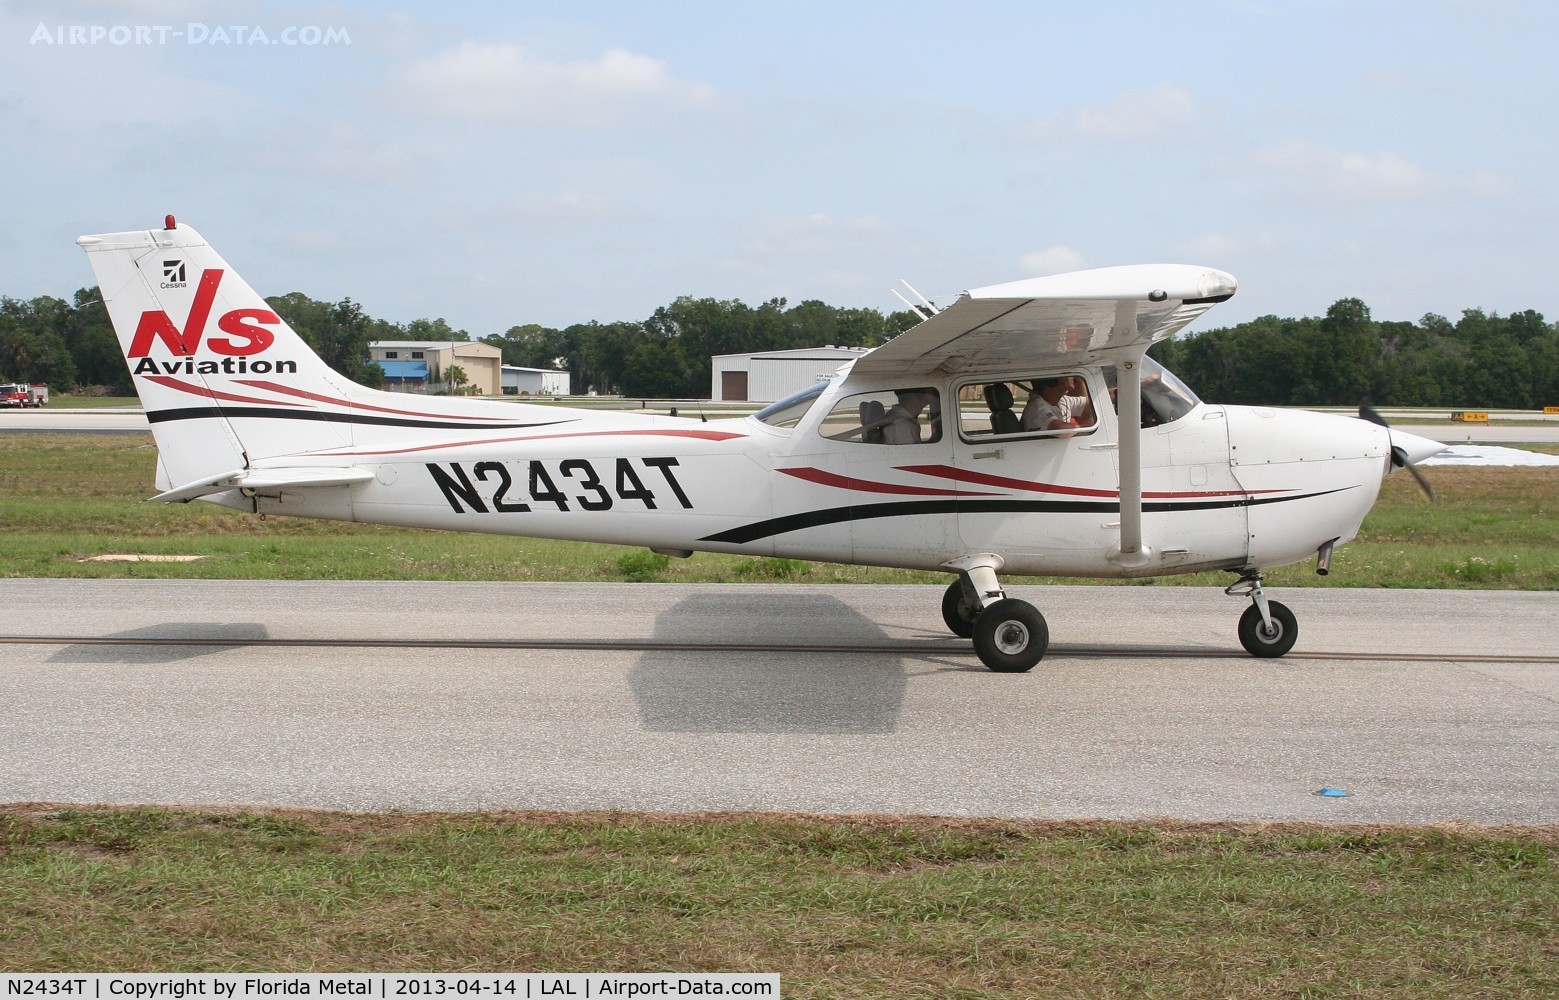 N2434T, 2006 Cessna 172R C/N 17281326, Cessna 172R